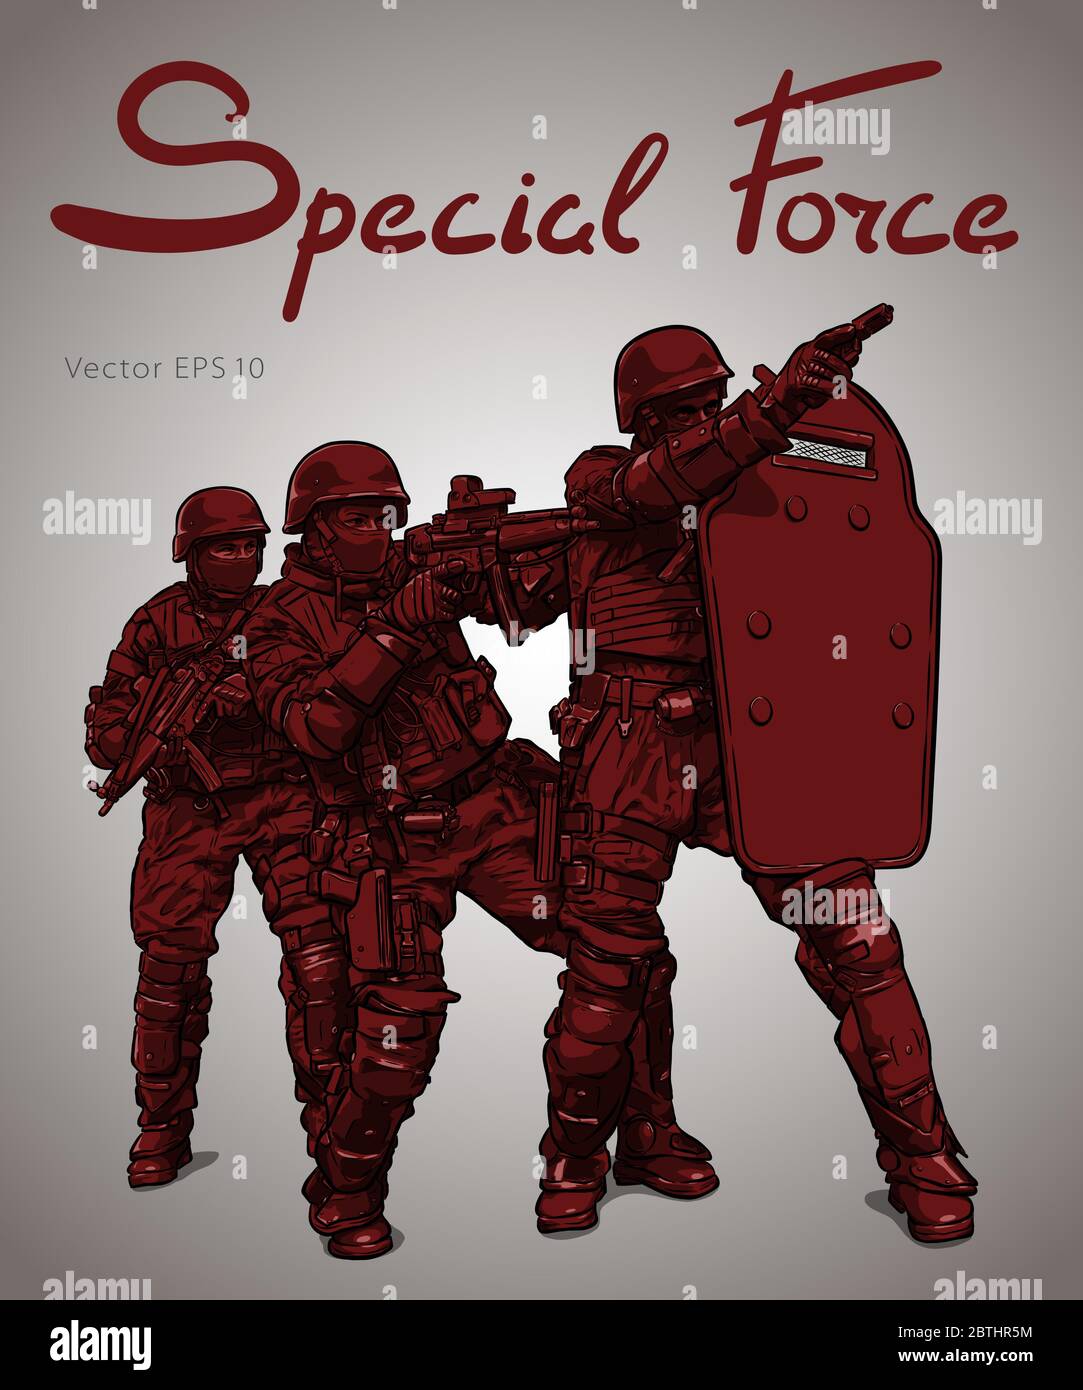 Les forces de police. L'opération de lutte contre la terreur Dessin vectoriel Illustration de Vecteur